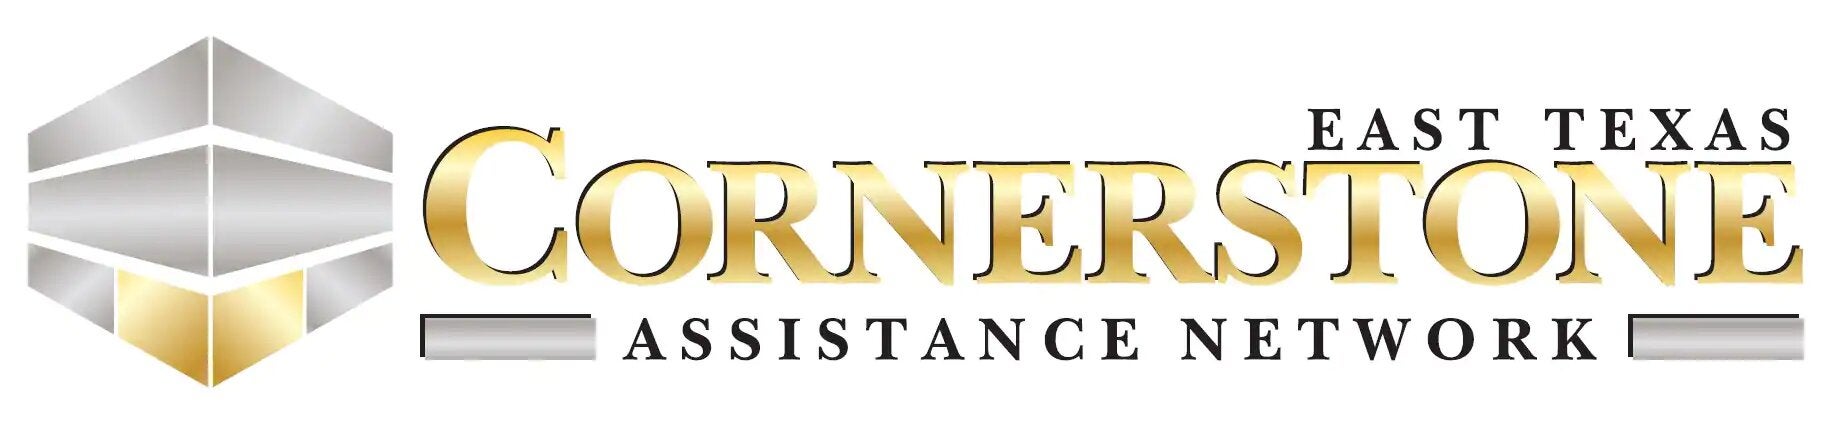 Cornerstome Assistance Network logo | Fairway Auto Center in Tyler TX